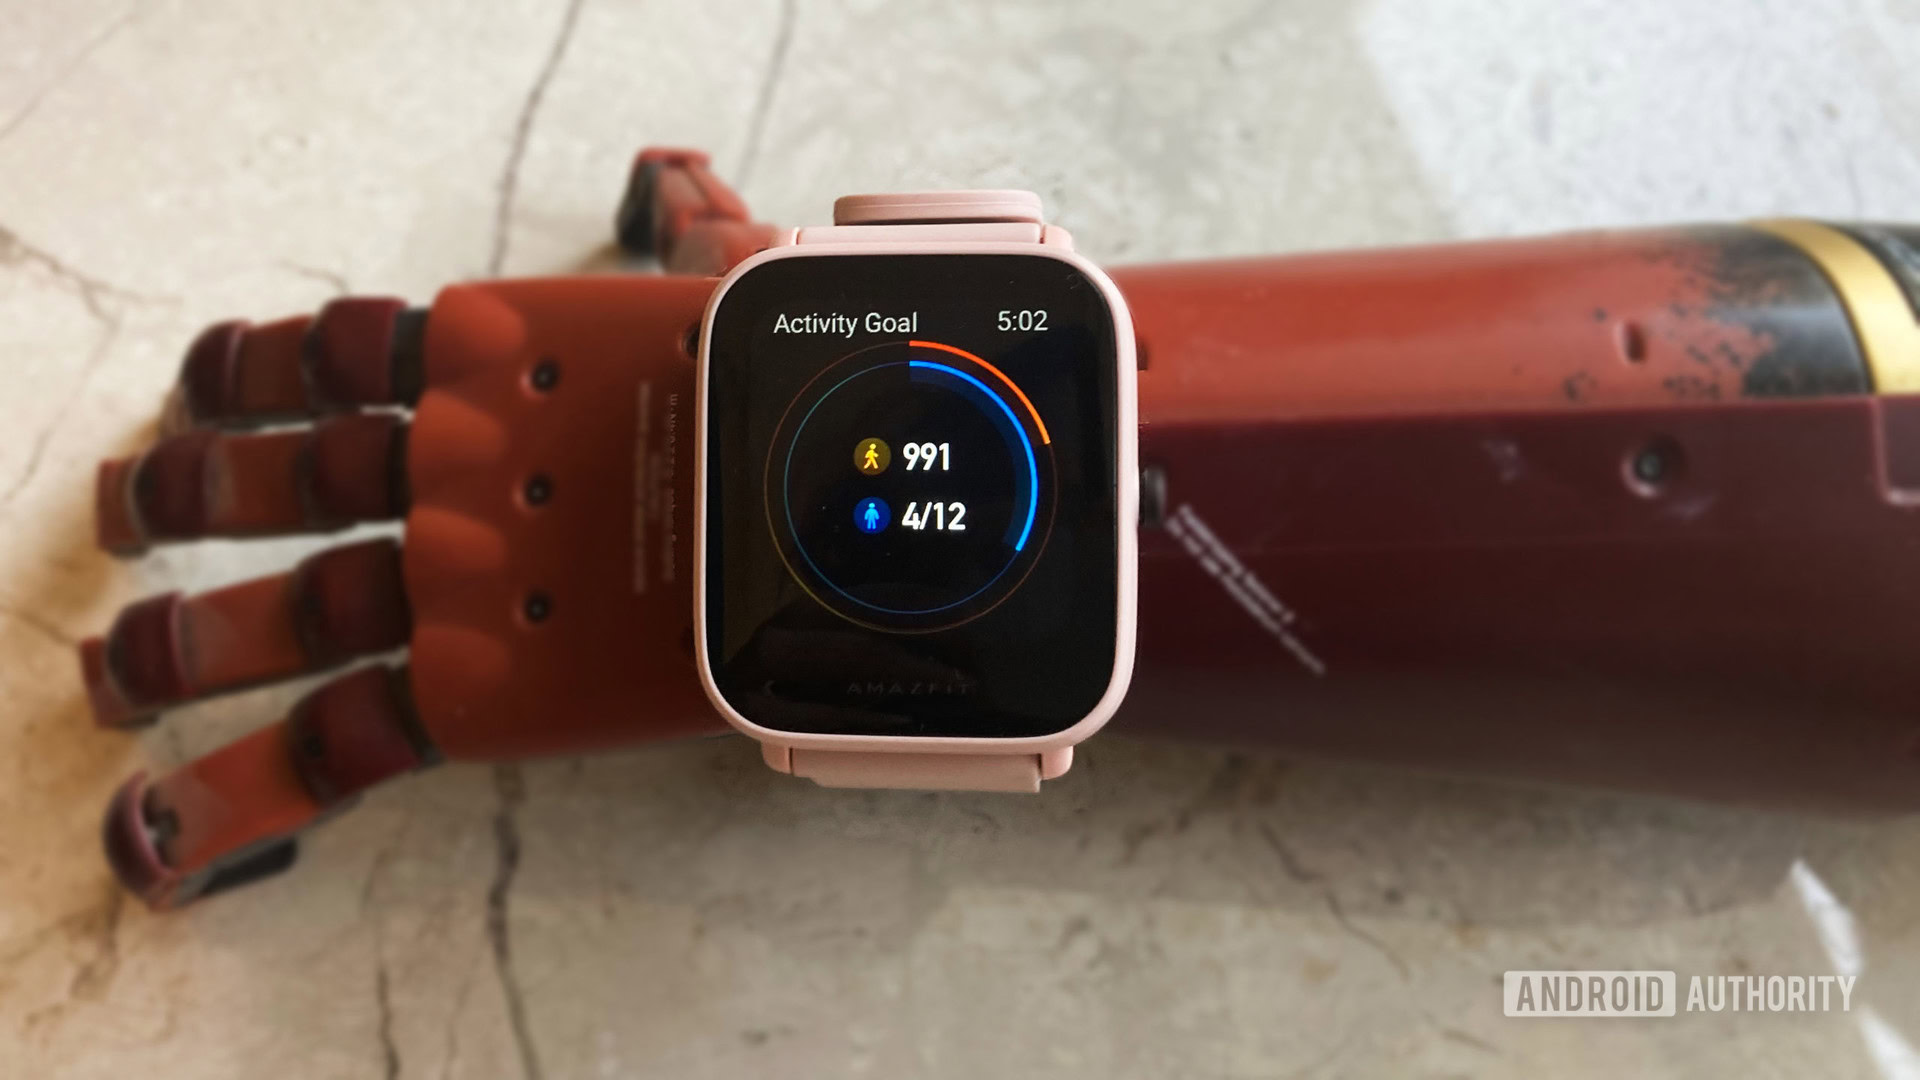 Amazfit Bip U Pro Smartwatch with SpO2, Built in Alexa- Pink – milaaj